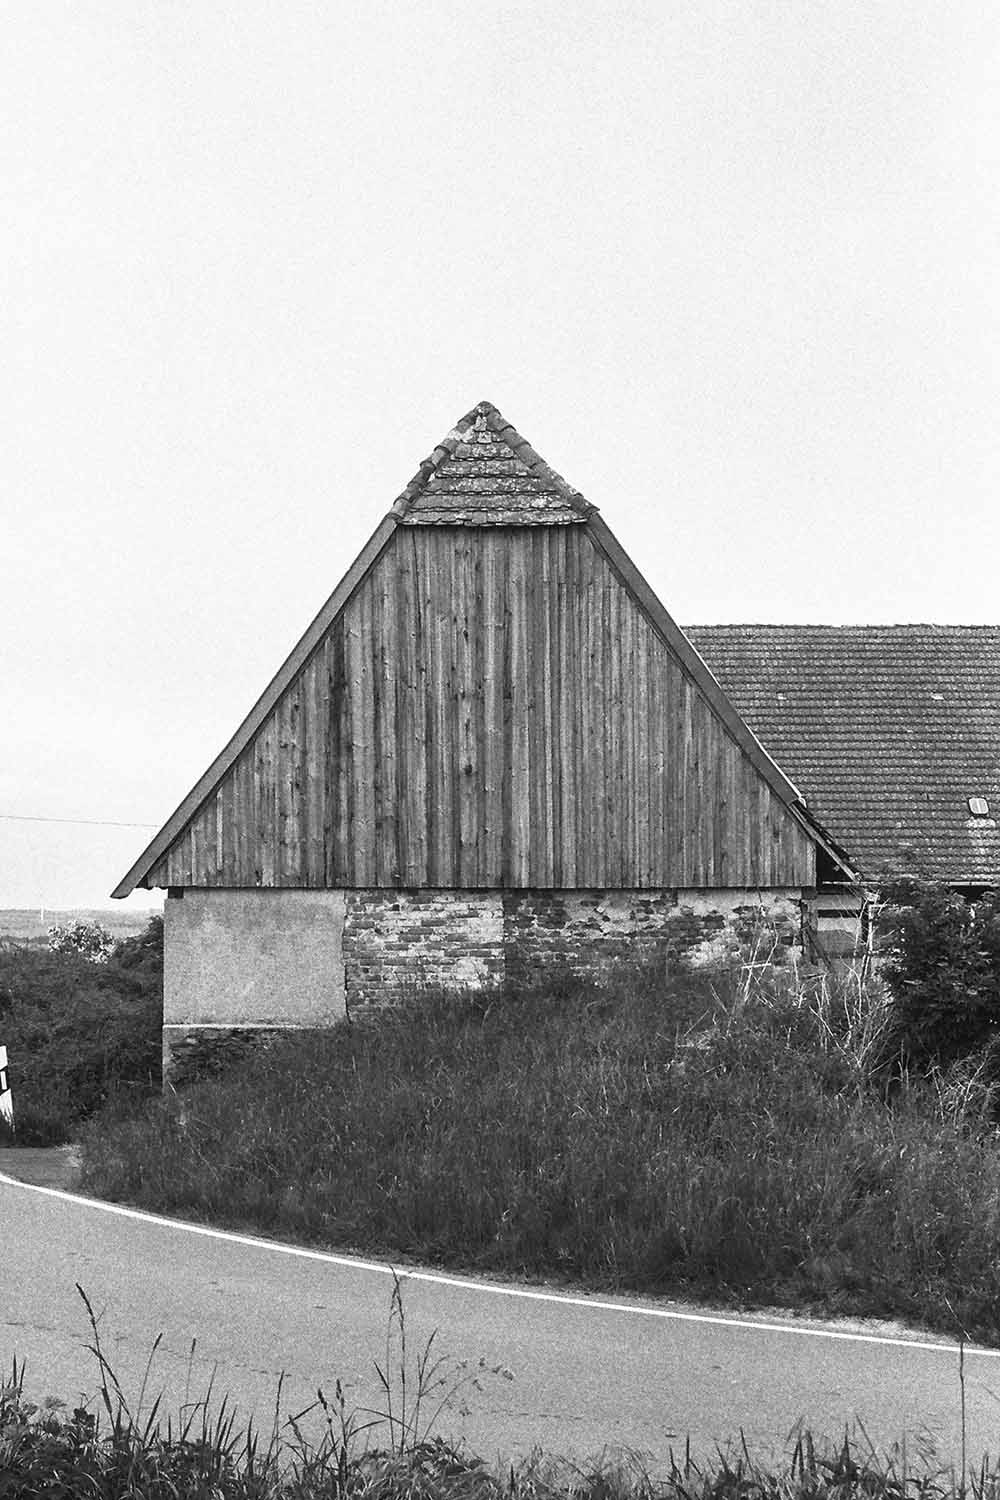 Analoge schwarz-weiß Architektur Fotografie im ländlichen Raum